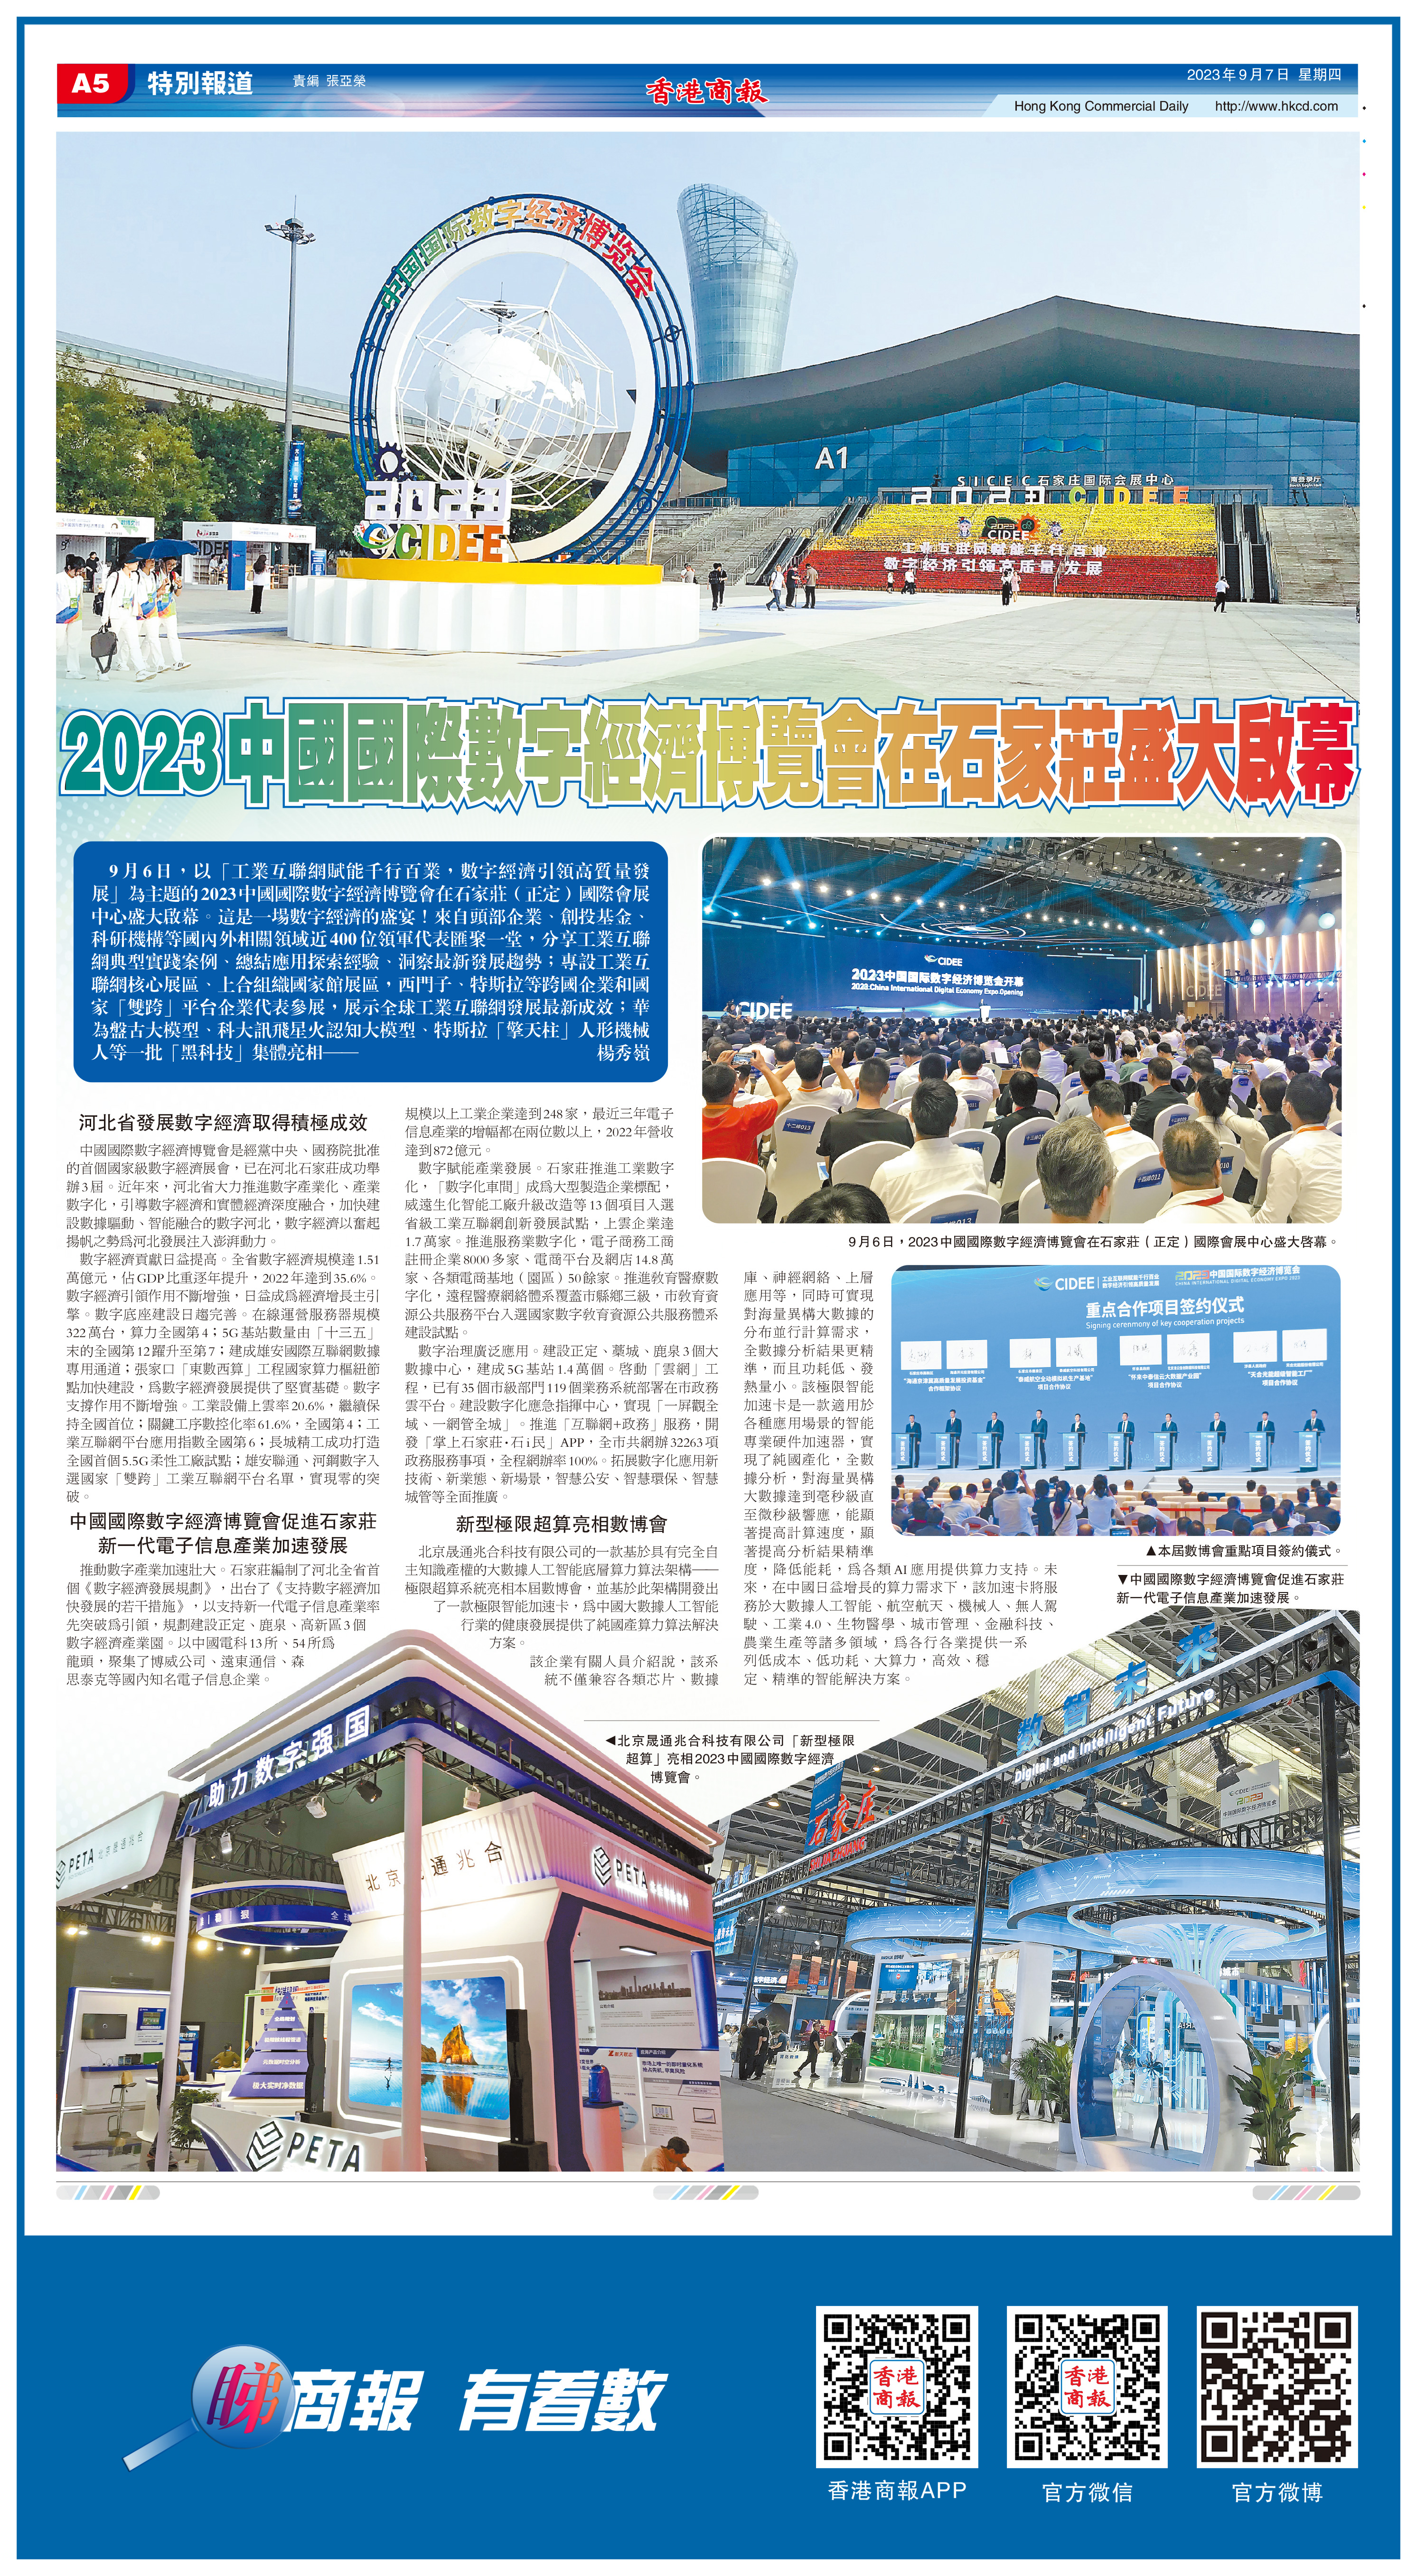 2023中國國際數字經濟博覽會在石家莊盛大啟幕